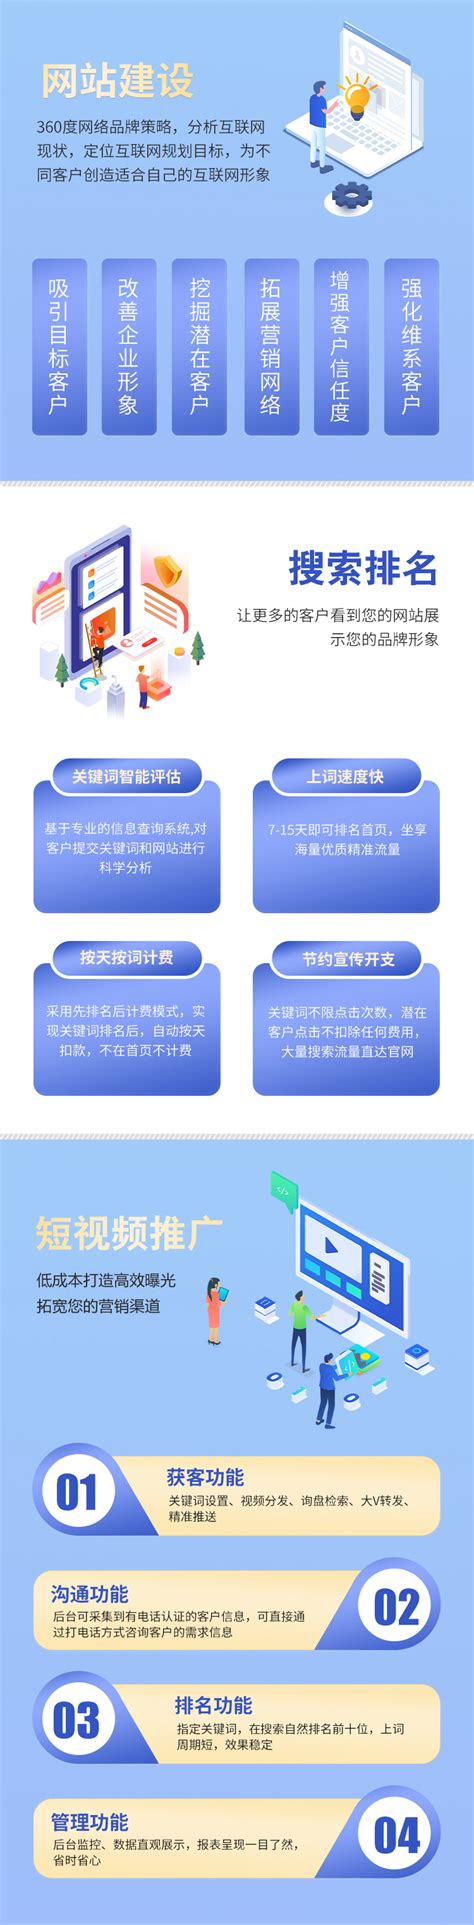 贵州网络推广工作规划